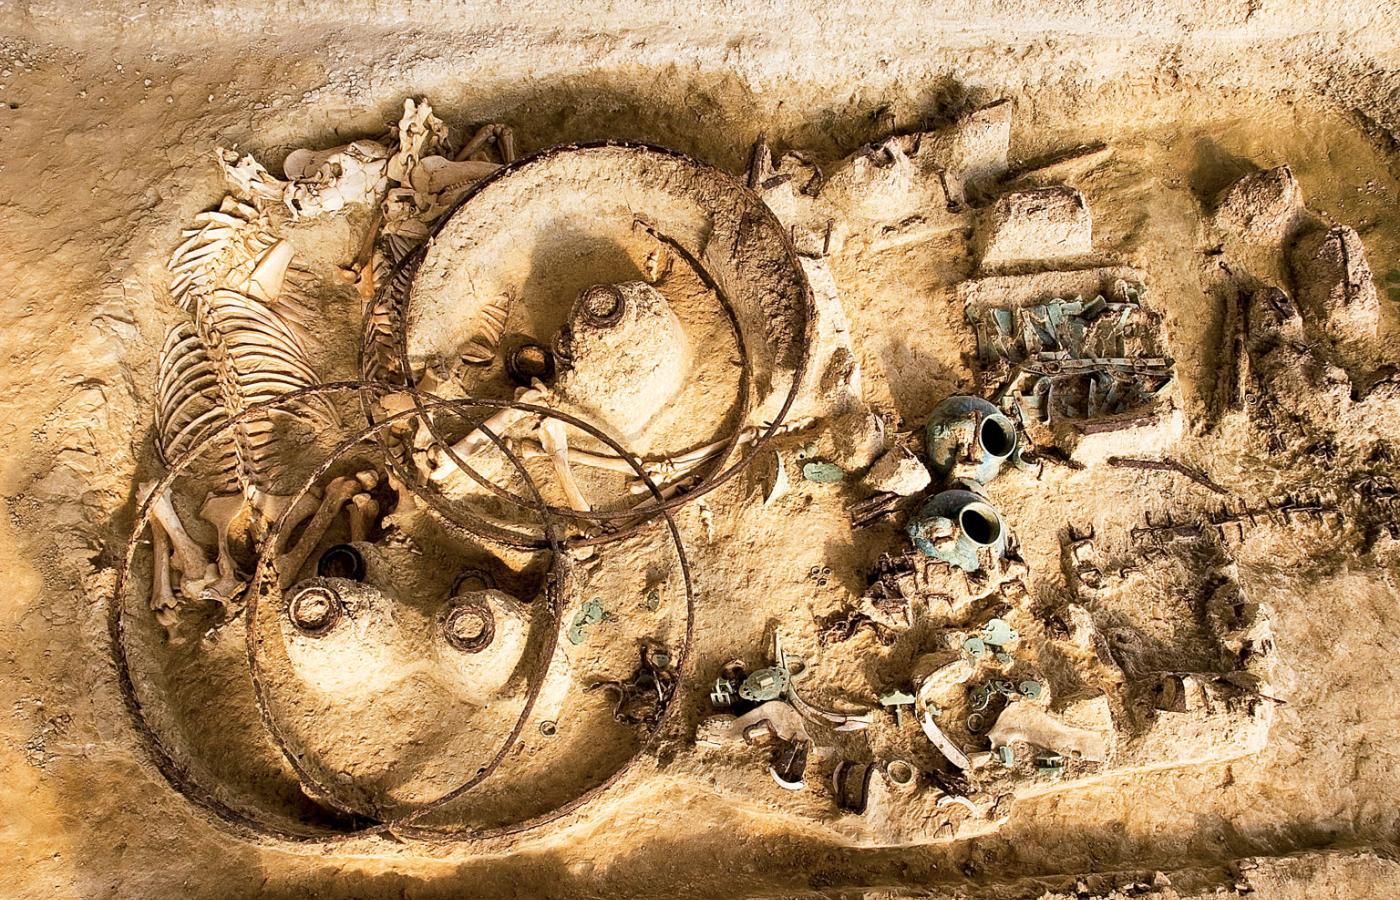 Tracki grób z północno-wschodniej Grecji (II w.) z czterokołowym wozem (zachowały się obręcze) oraz dwoma szkieletami koni.